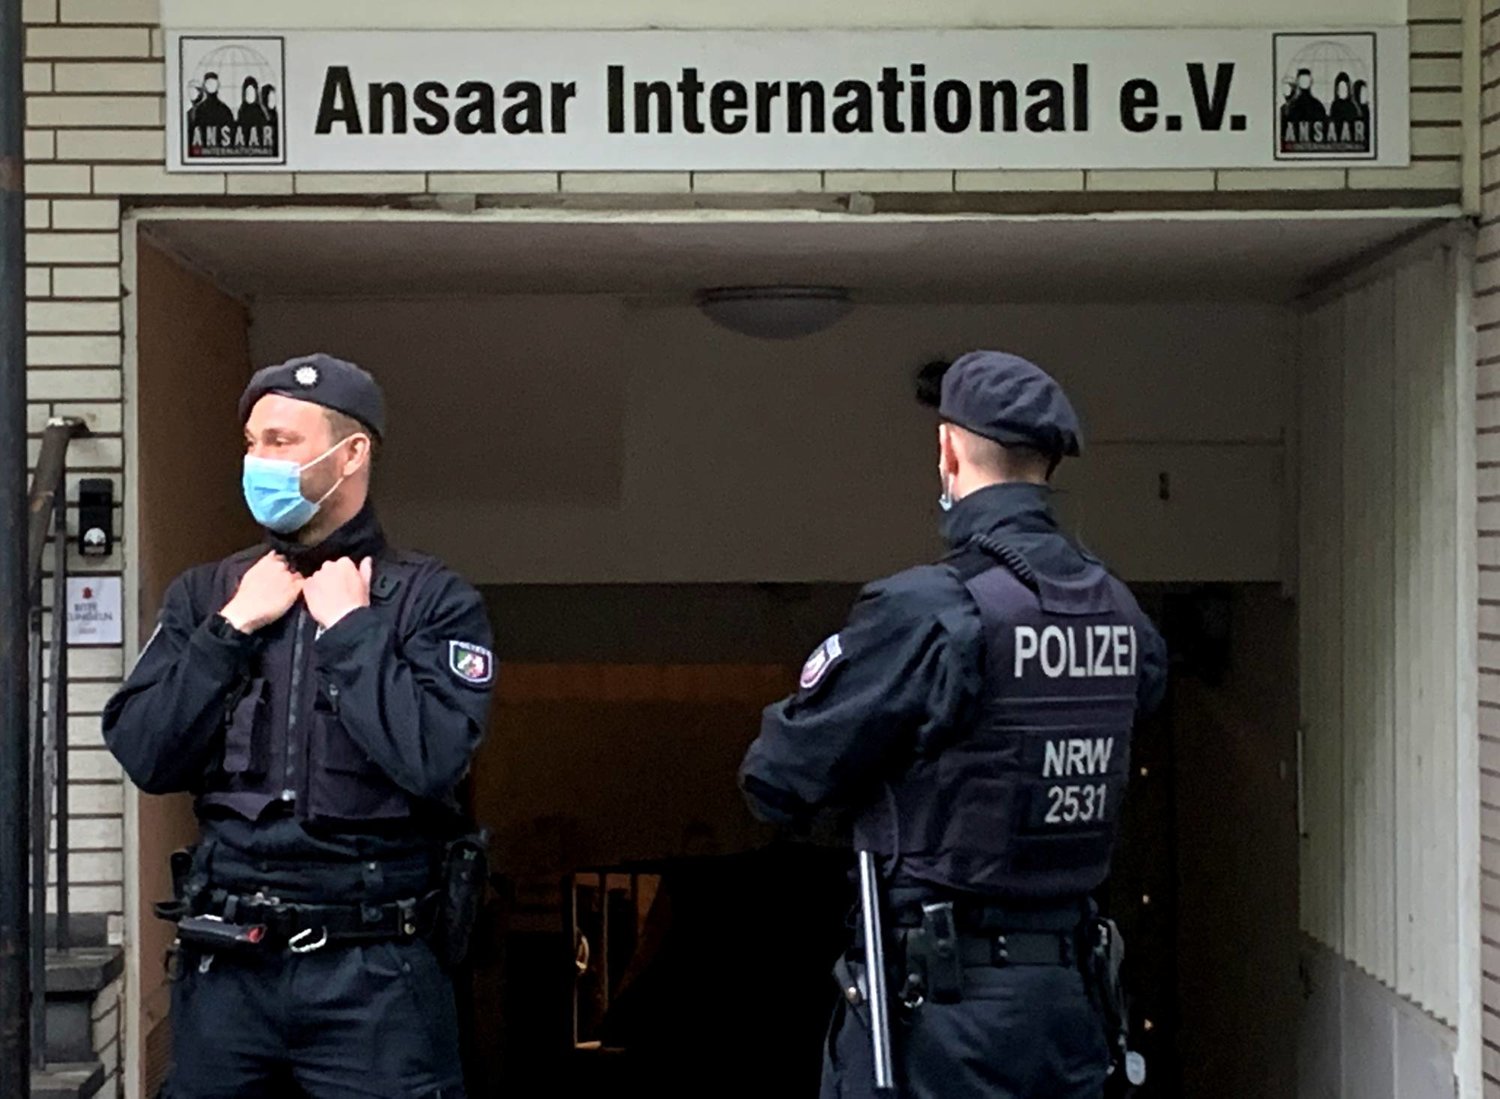 الشرطة الألمانية تومّن مبنى بعد أن حظرت البلاد منظمة «أنصار الدولية» الإسلامية في دوسلدورف - ألمانيا 5 مايو 2021 (رويترز)